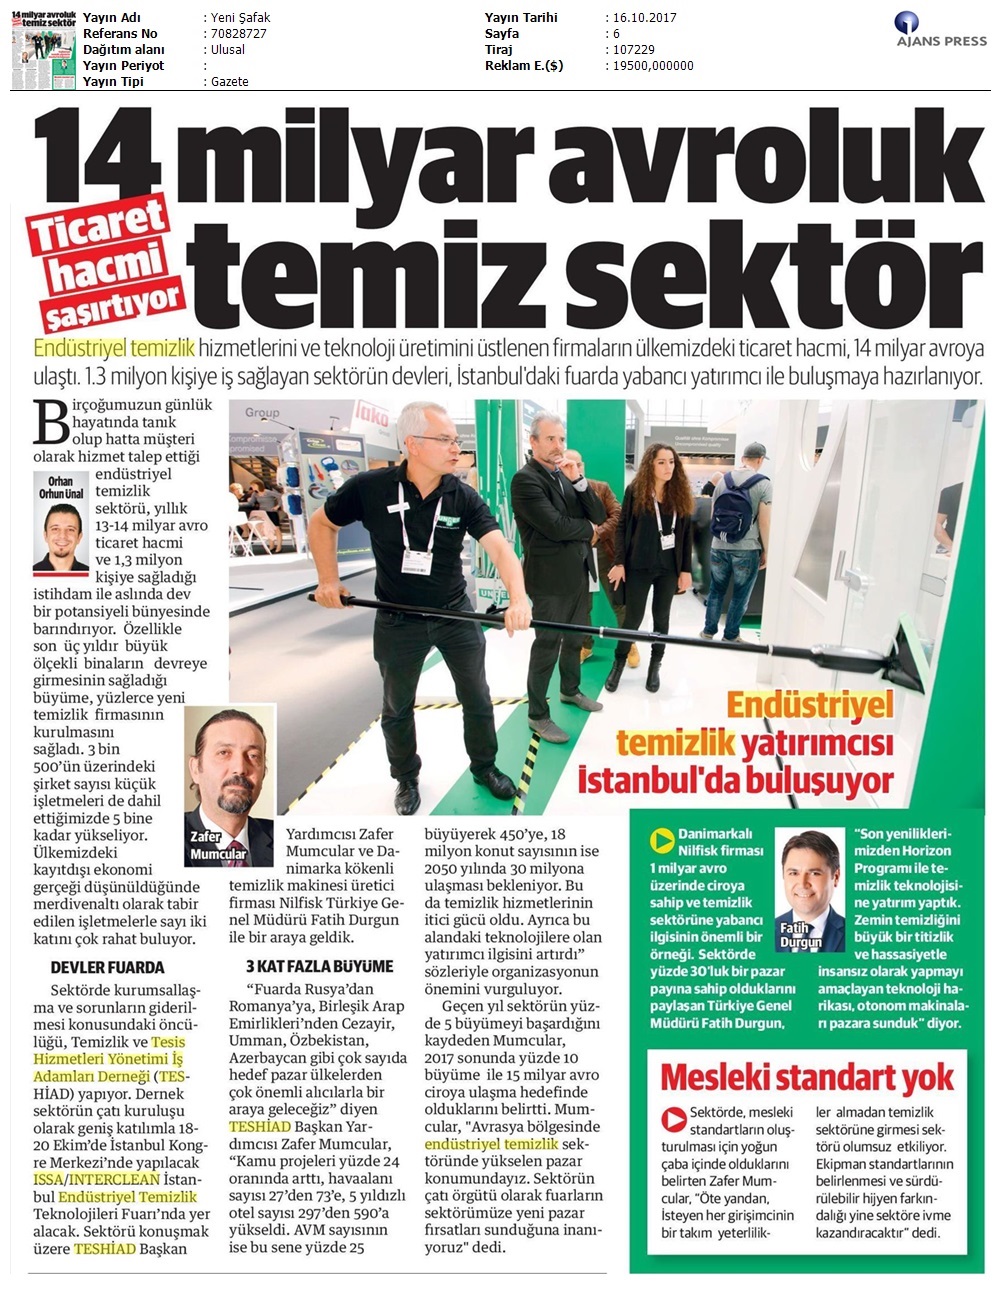 Yeni Şafak Gazetesi 16.10.2017